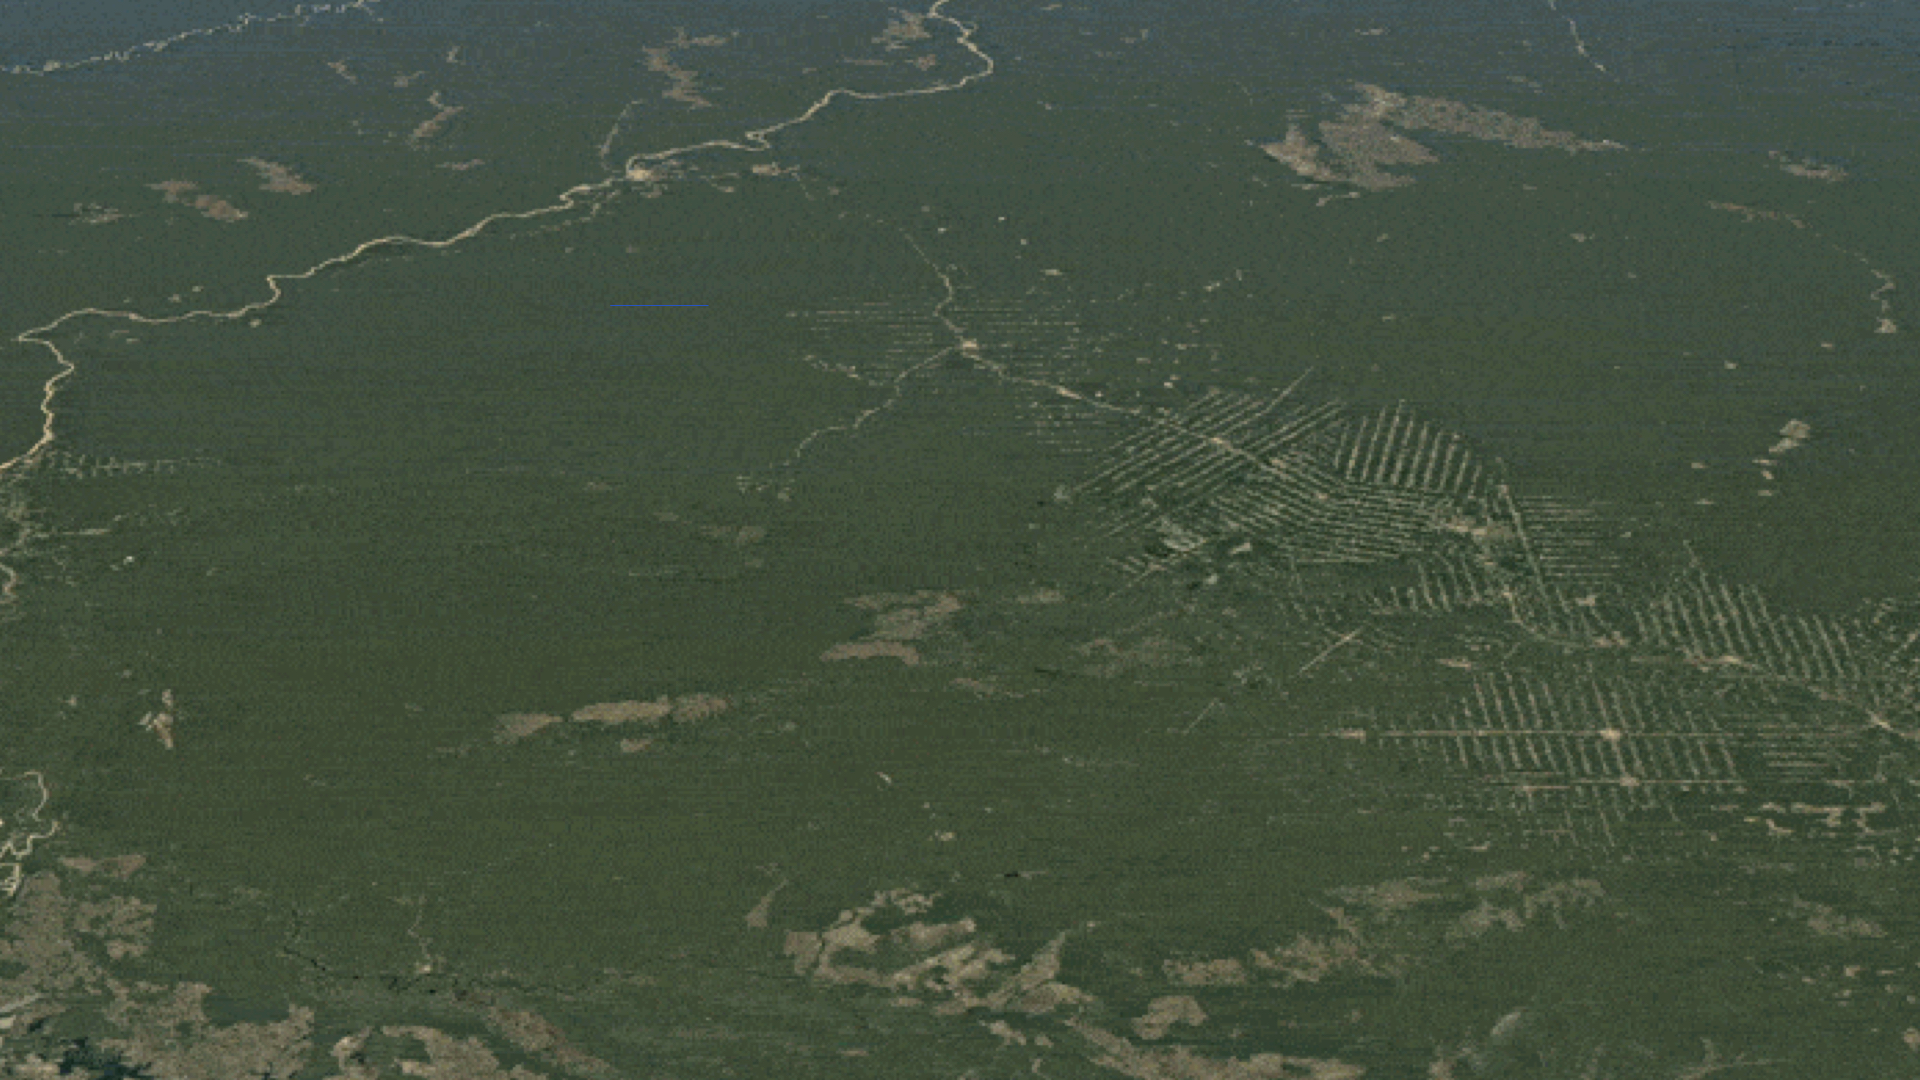 Observez la différence que le peuple Suruí a faite en protégeant la forêt amazonienne qu'il considère comme leur terre à Rondônia, Brésil © Google Earth